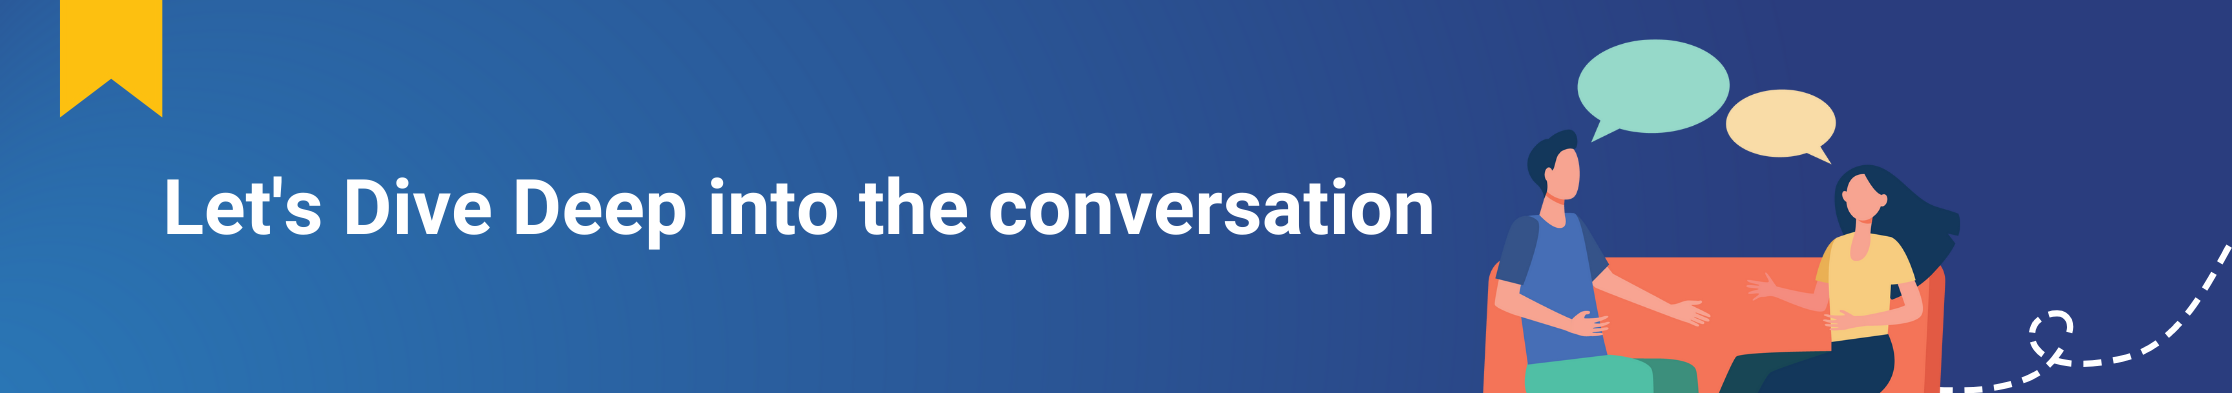 Let's_Dive_Deep_into_the_Conversation